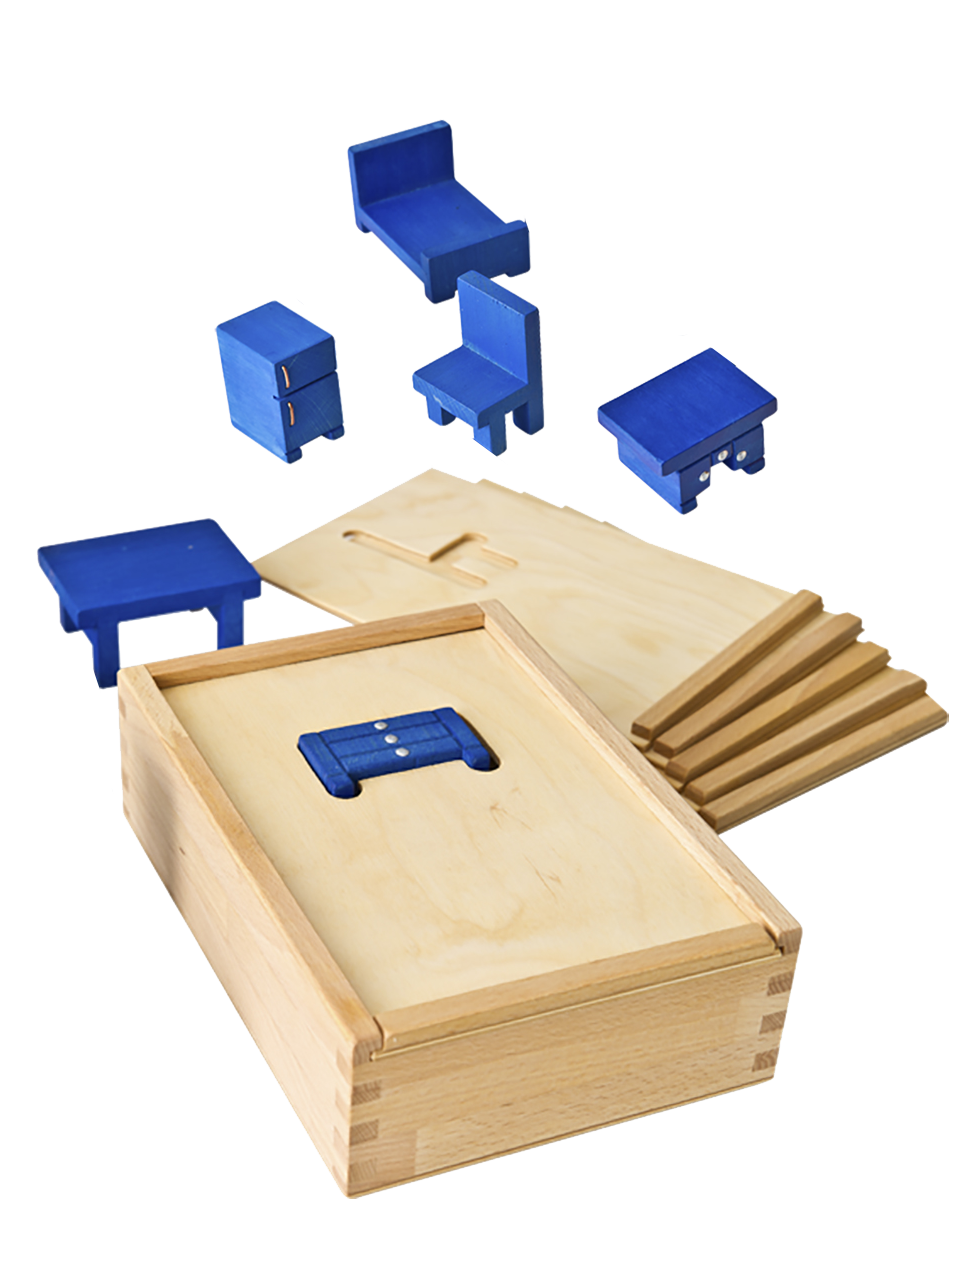 Formlådan, en trälåda med tillhörande möbler i trä. För att öva samband mellan två- och tredimensionella former.